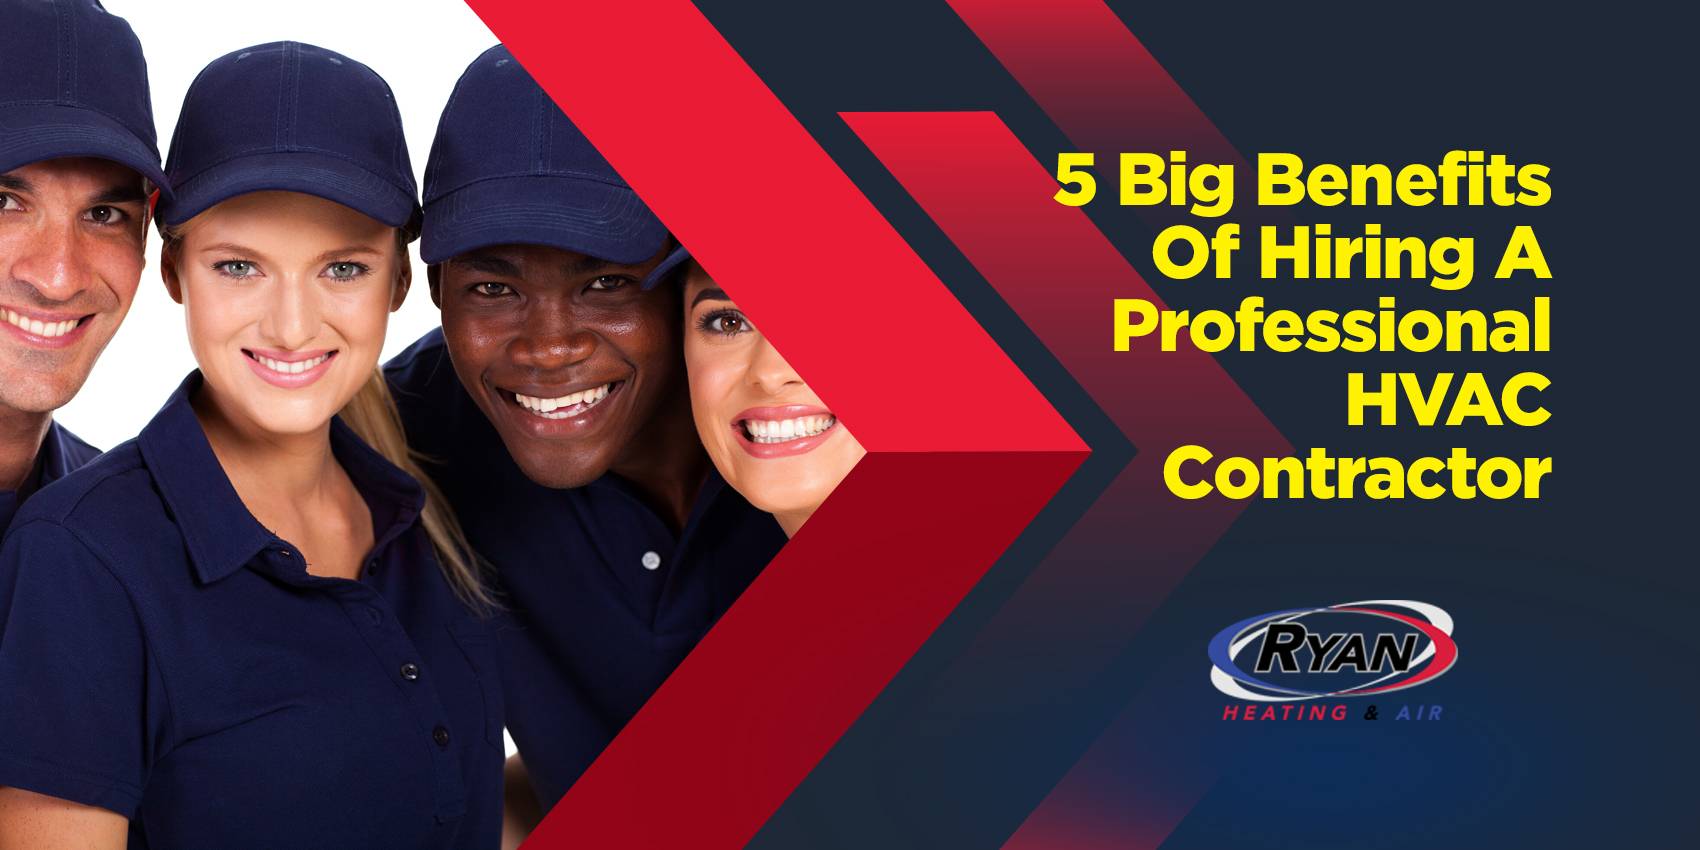 5 Big Benefits of Hiring A Professional HVAC Contractor